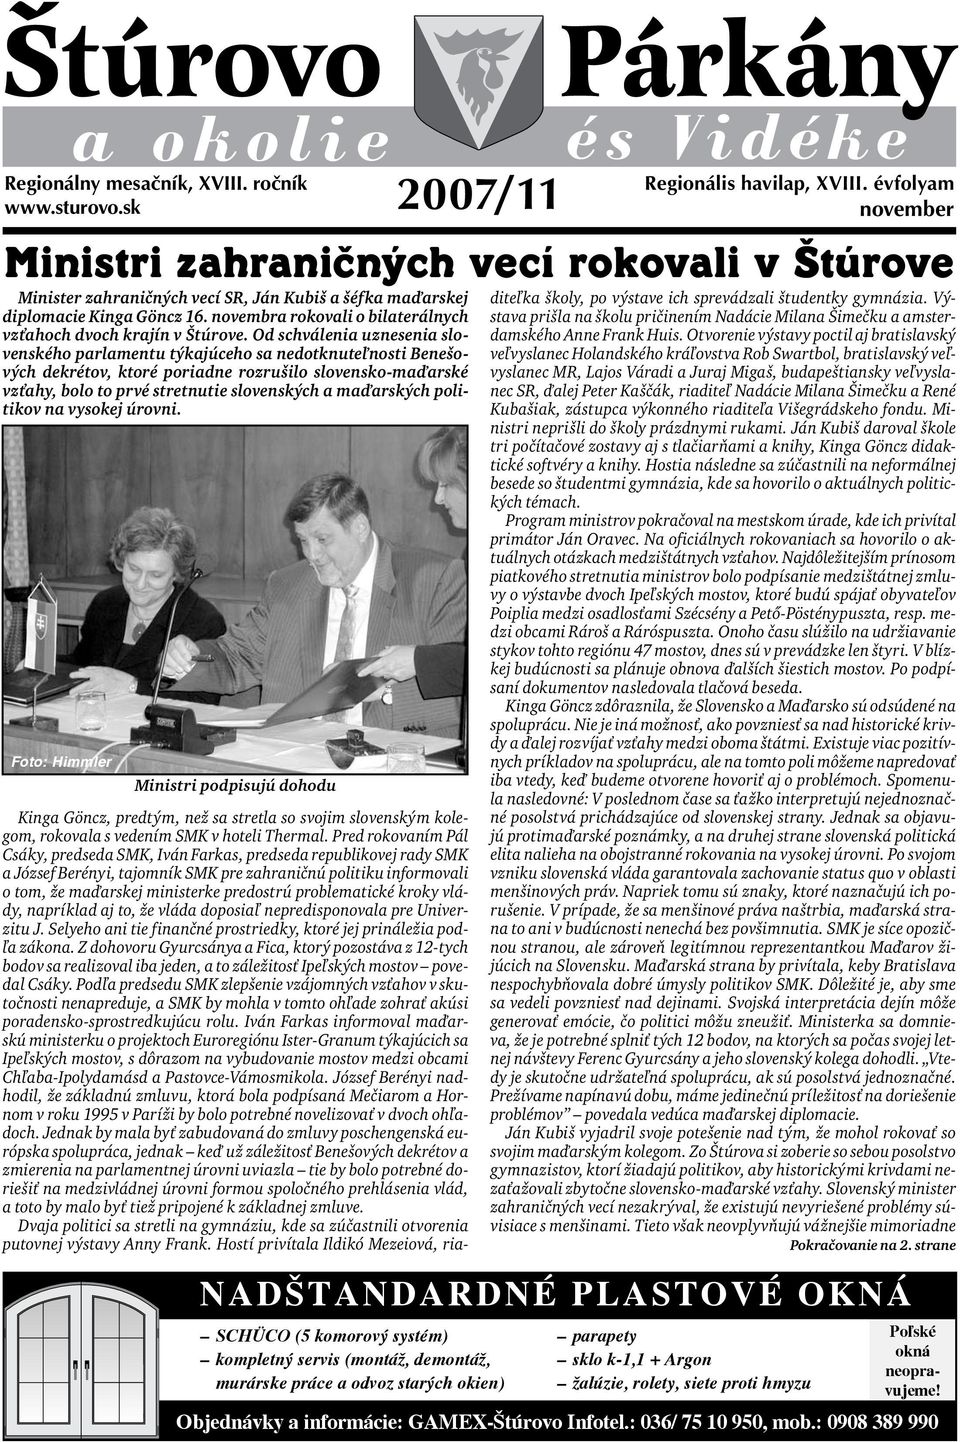 Od schválenia uznesenia slovenského parlamentu týkajúceho sa nedotknuteľnosti Benešových dekrétov, ktoré poriadne rozrušilo slovensko-maďarské vzťahy, bolo to prvé stretnutie slovenských a maďarských